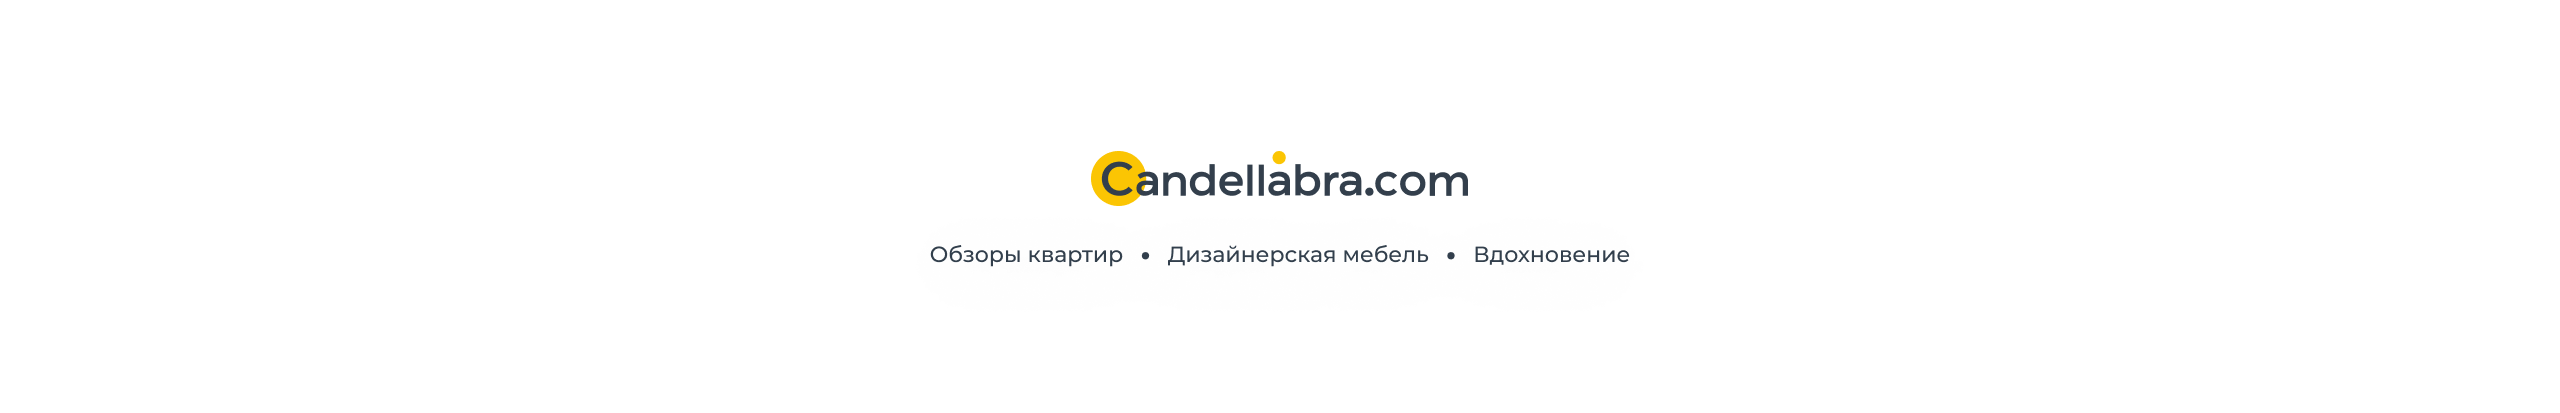 Banner de perfil de CANDELLABRA .COM